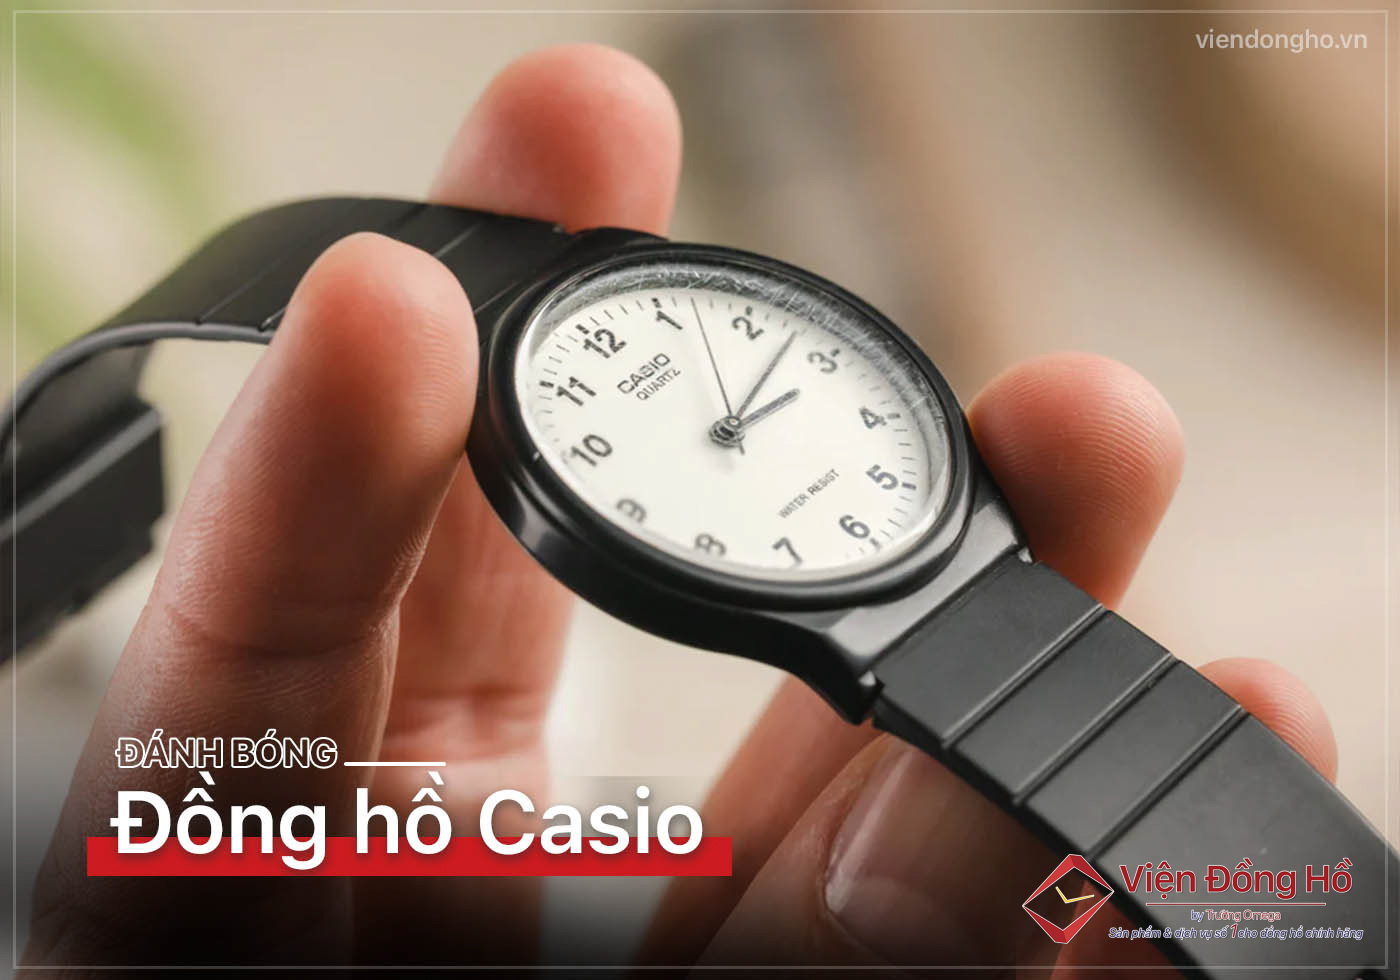 Danh bong dong ho Casio 5